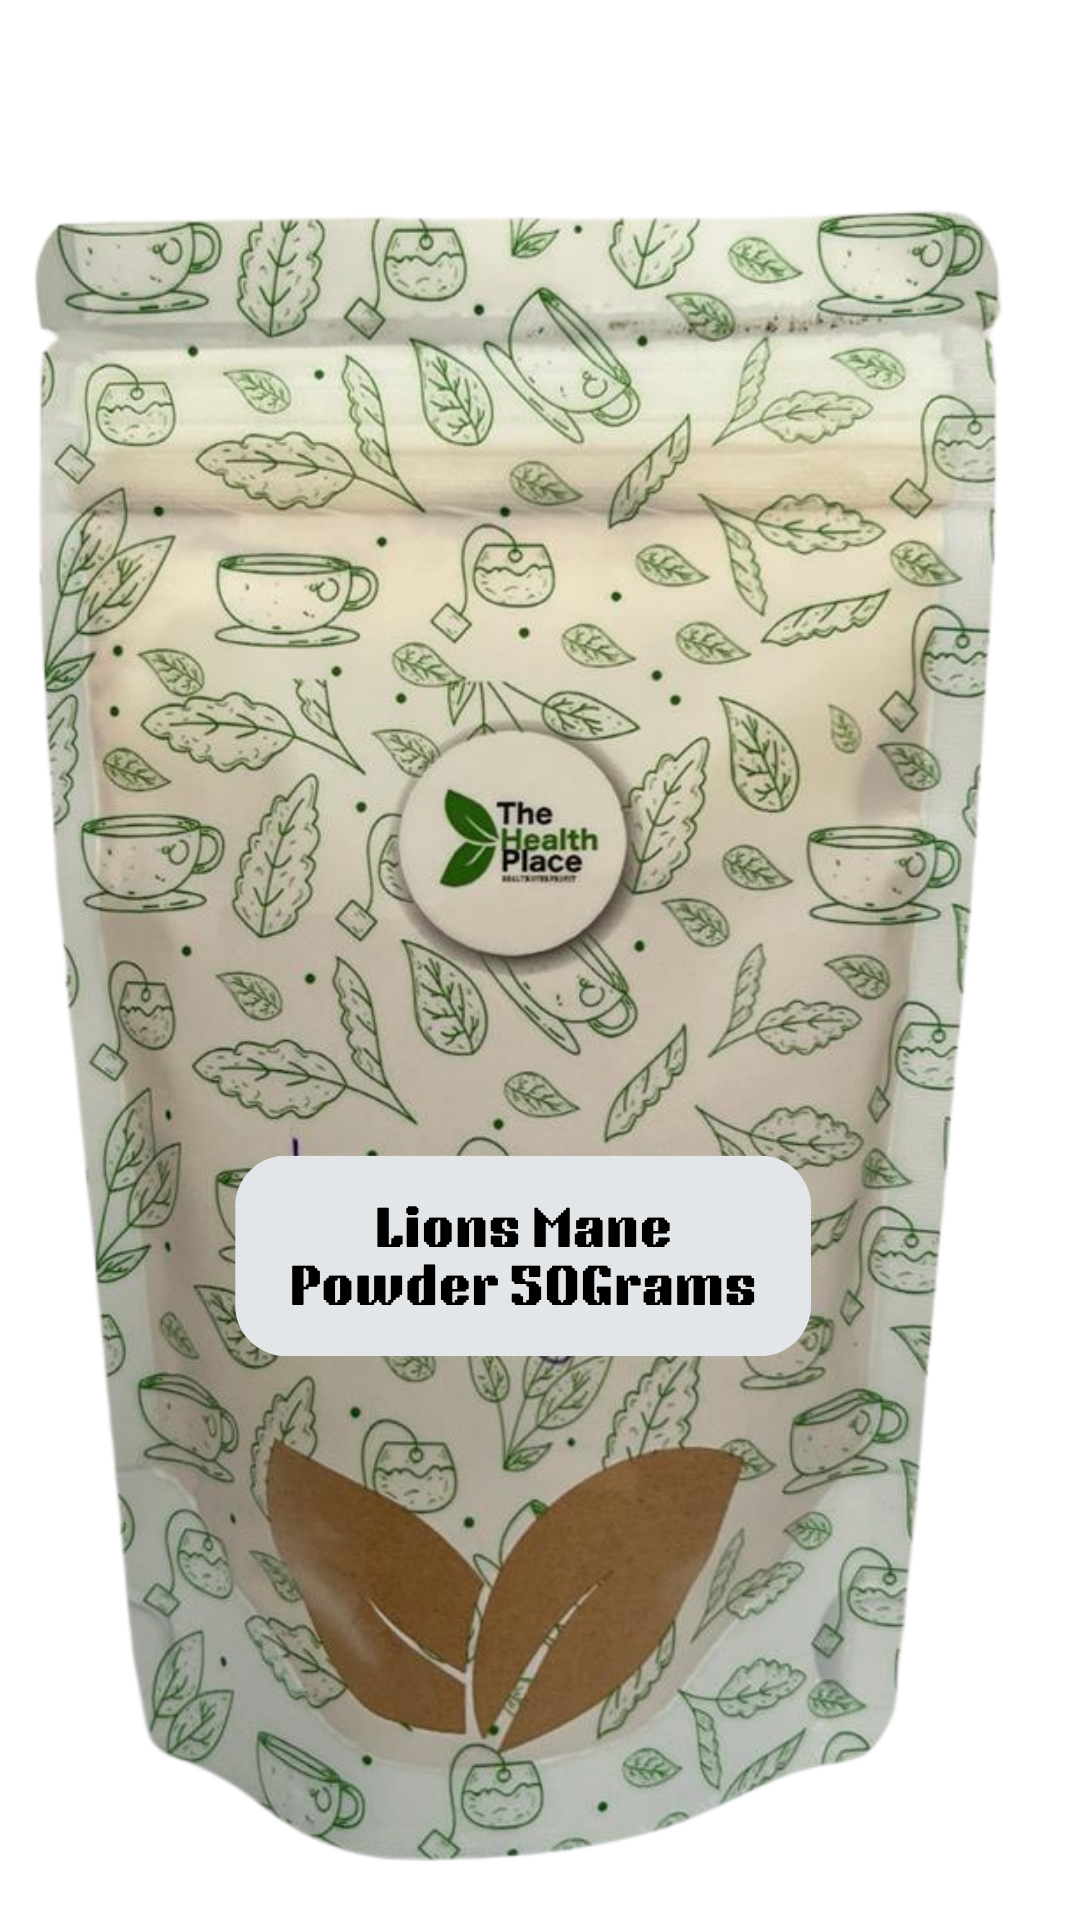 Lions Mane Mushroom Organic -50 Grams Powder